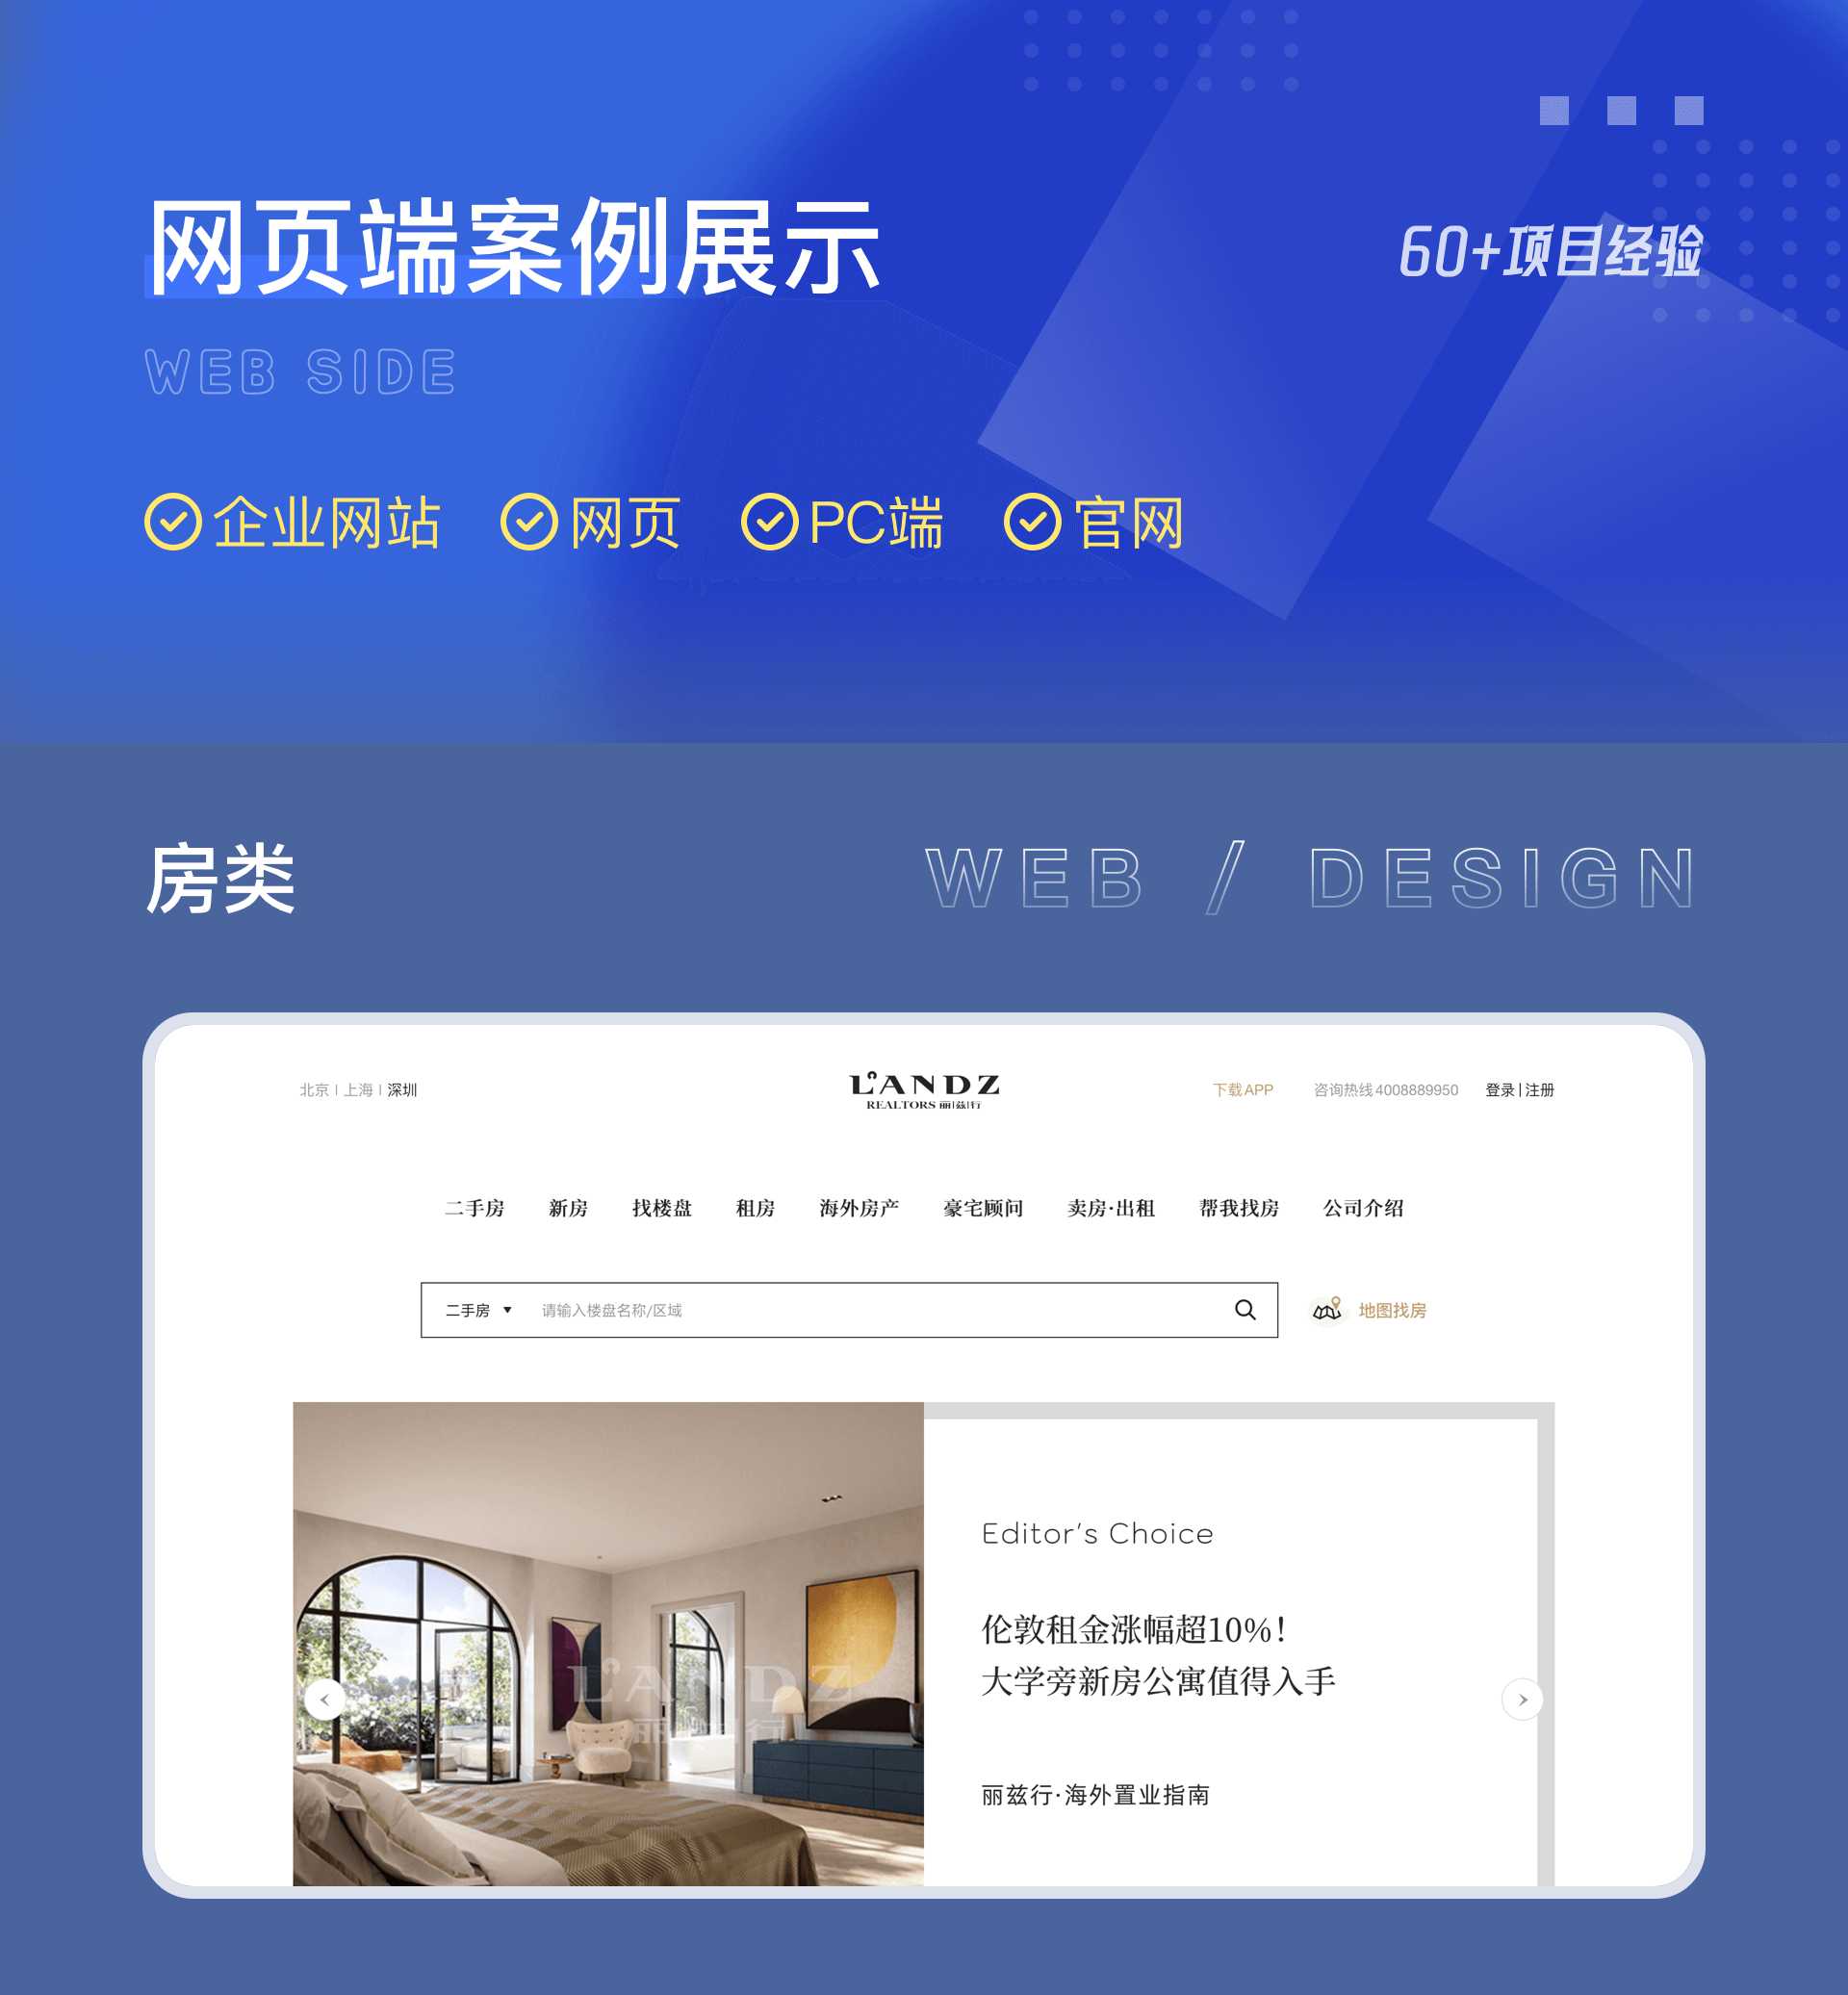 网页设计案例 | 网站UI设计